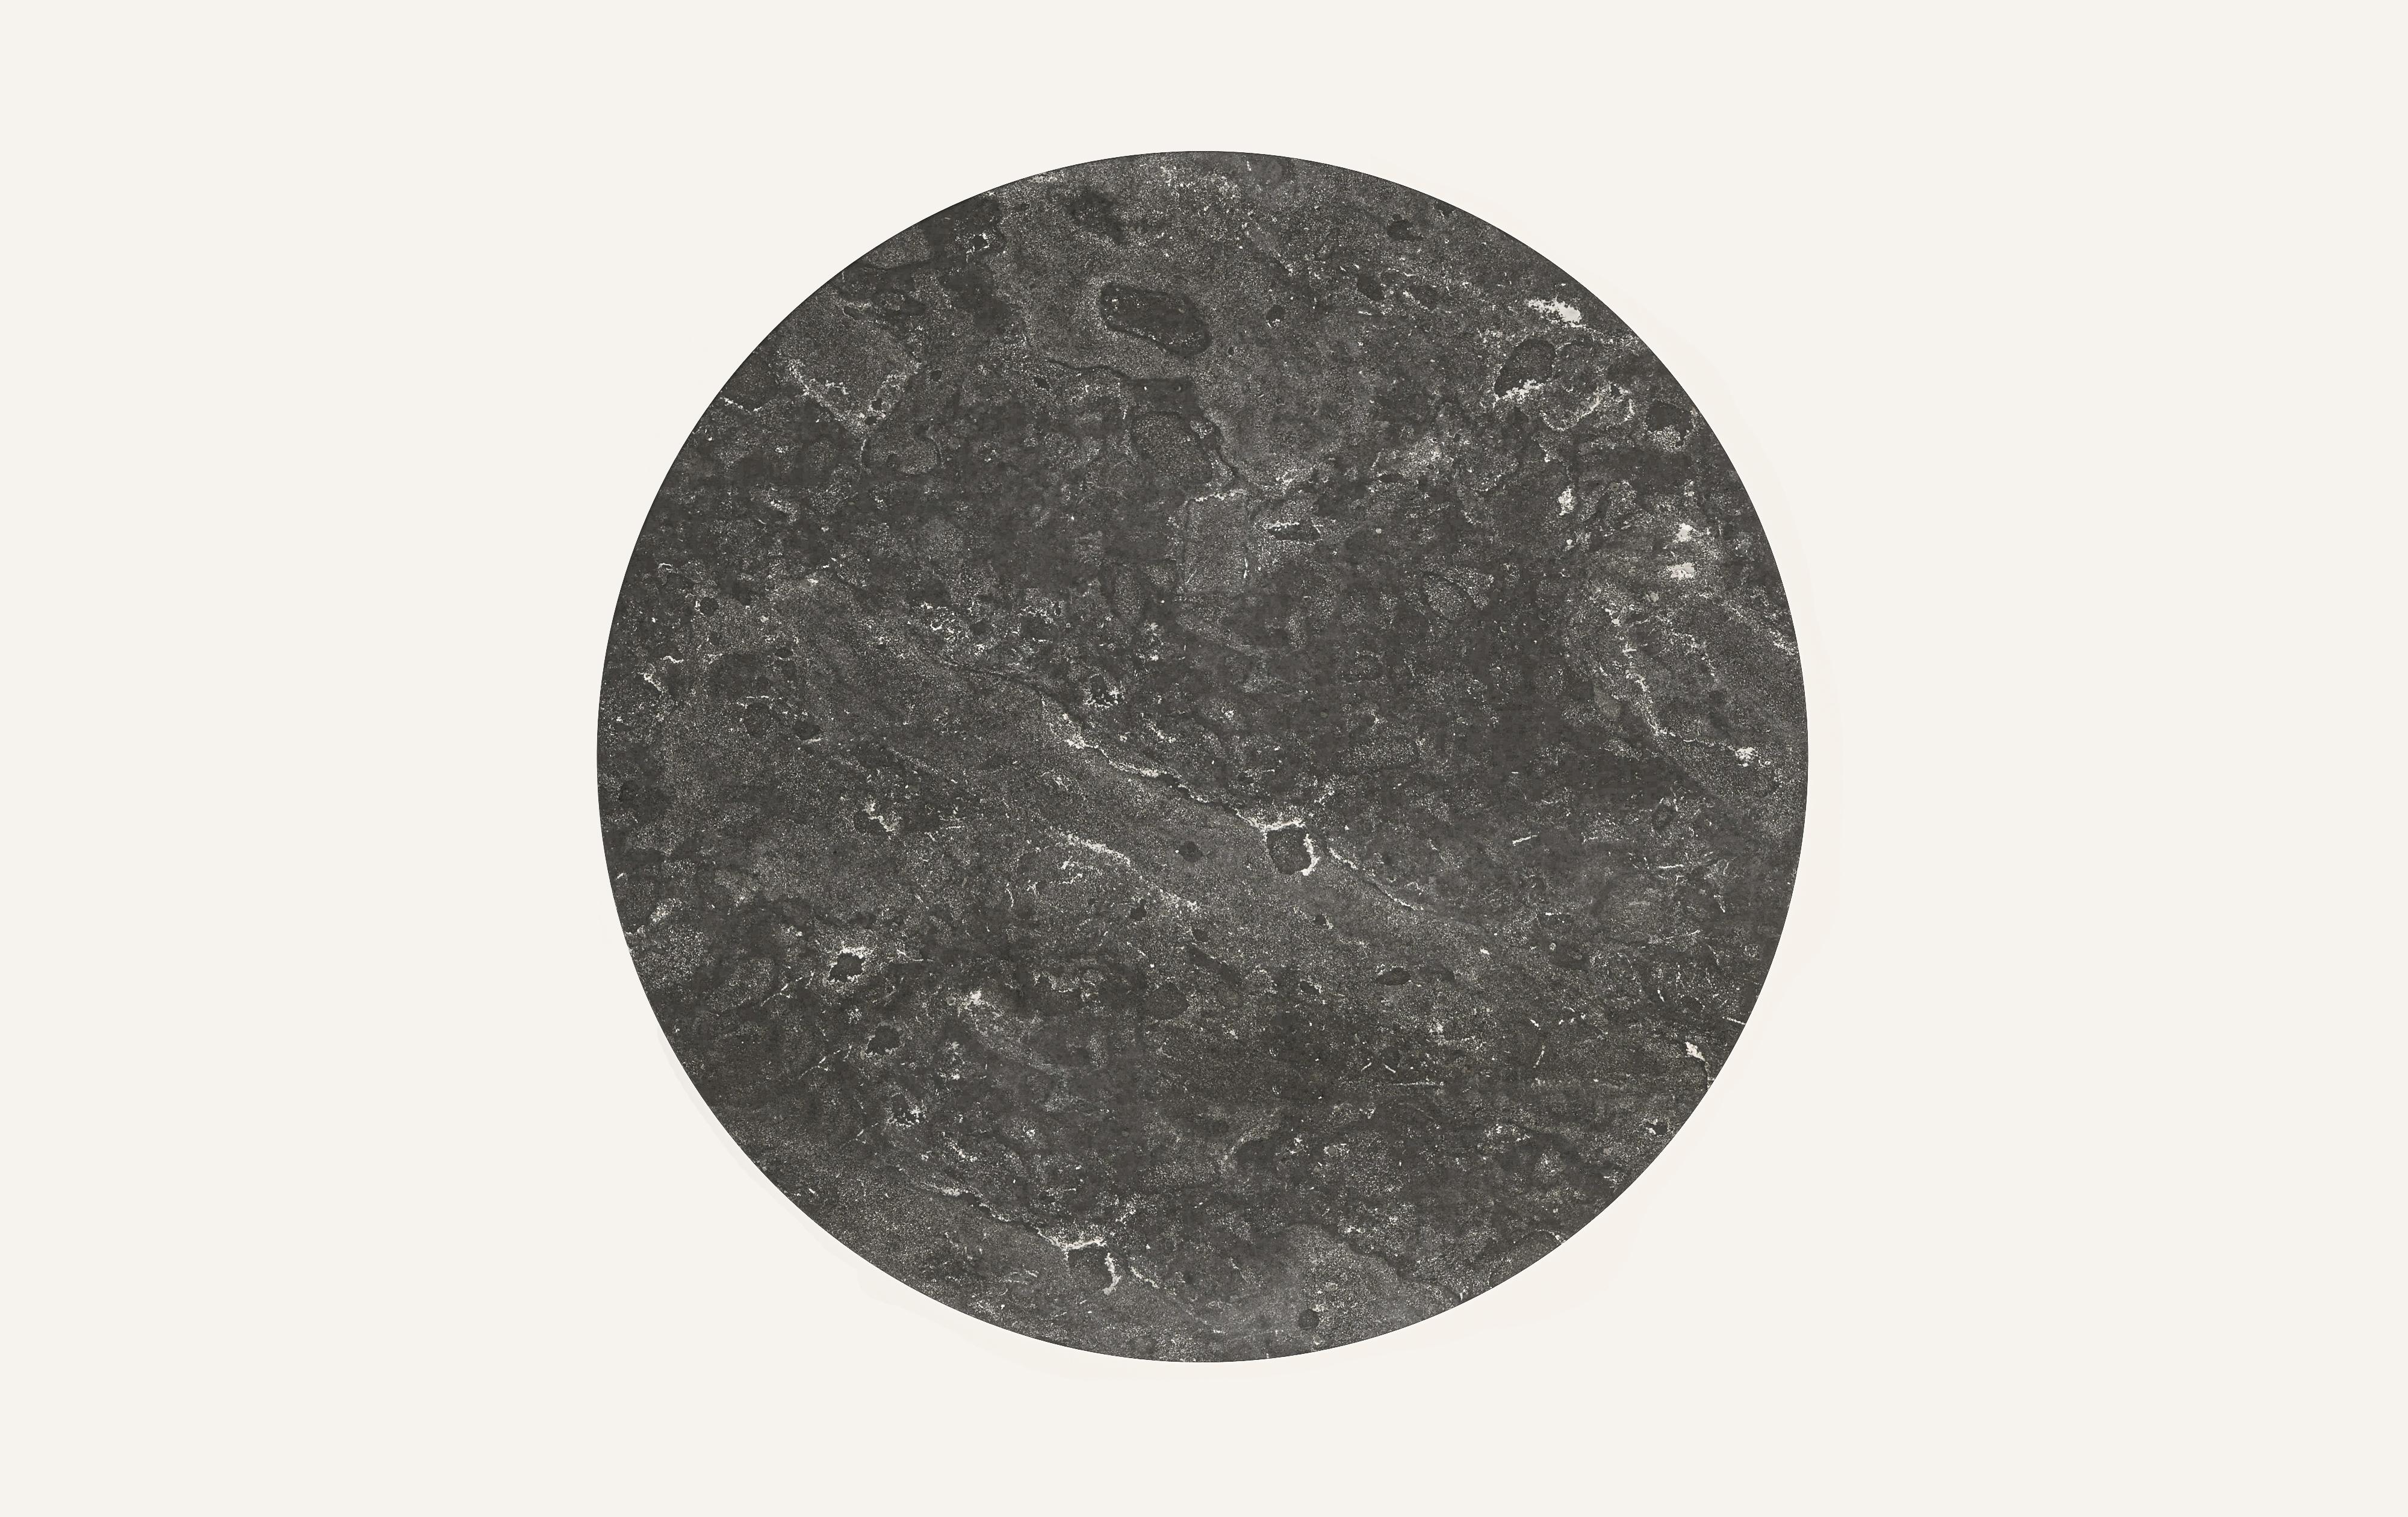 American FORM(LA) Cono Round Dining Table 48”L x 48”W x 30”H Nero Petite Granite For Sale